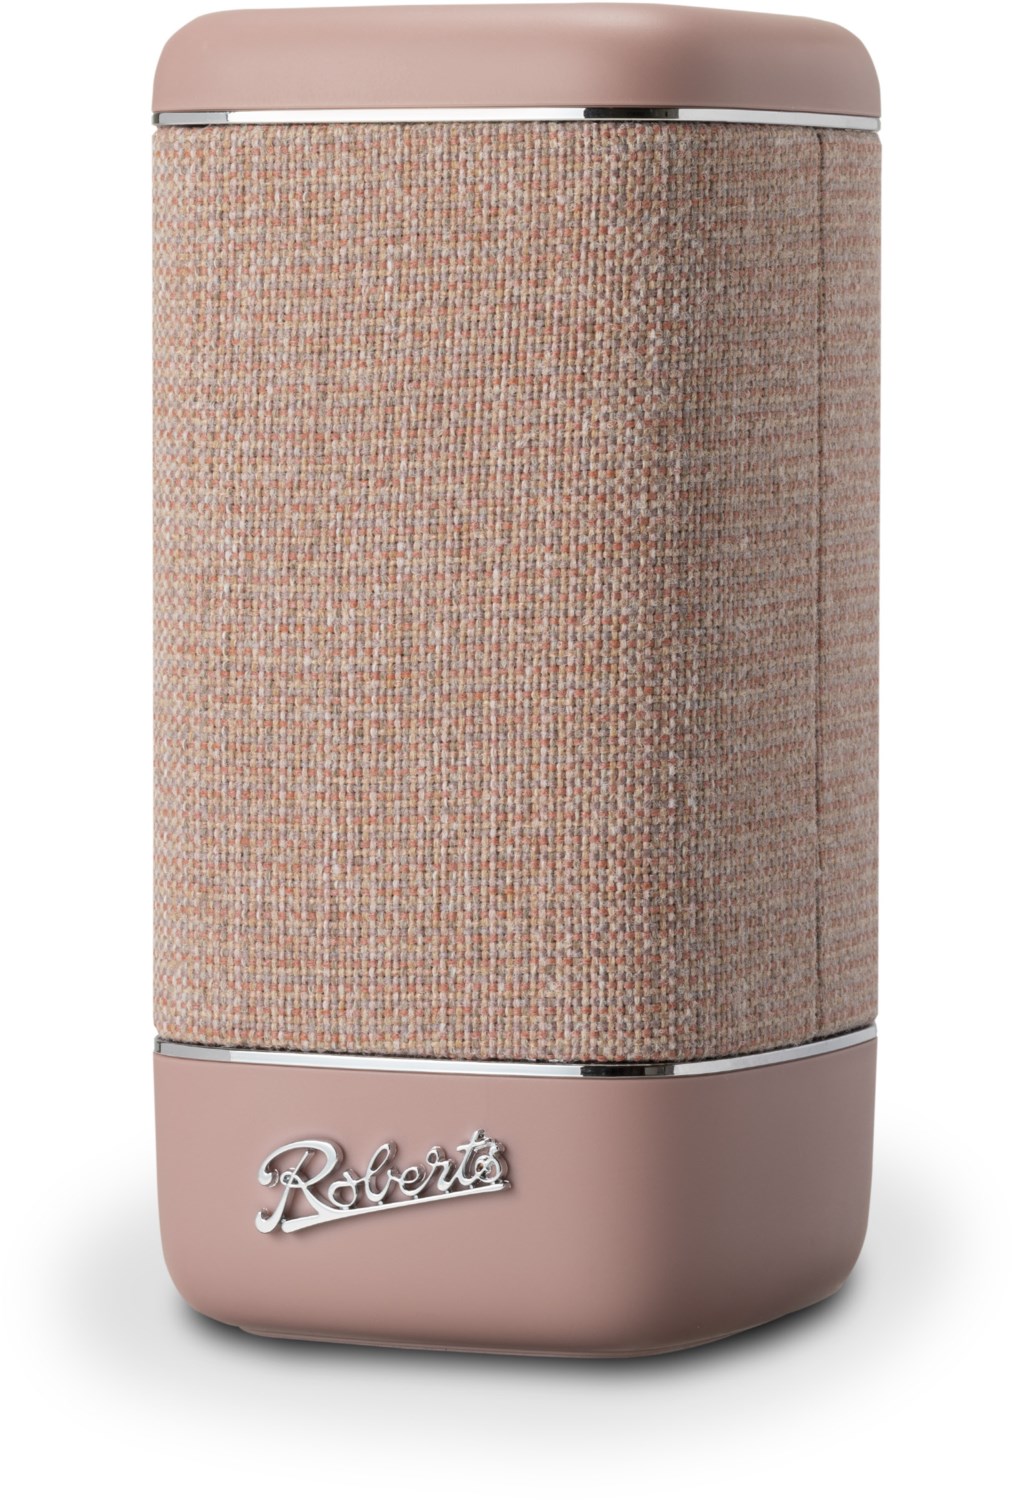 Beacon 325 BT Bluetooth-Lautsprecher dusty pink von Roberts